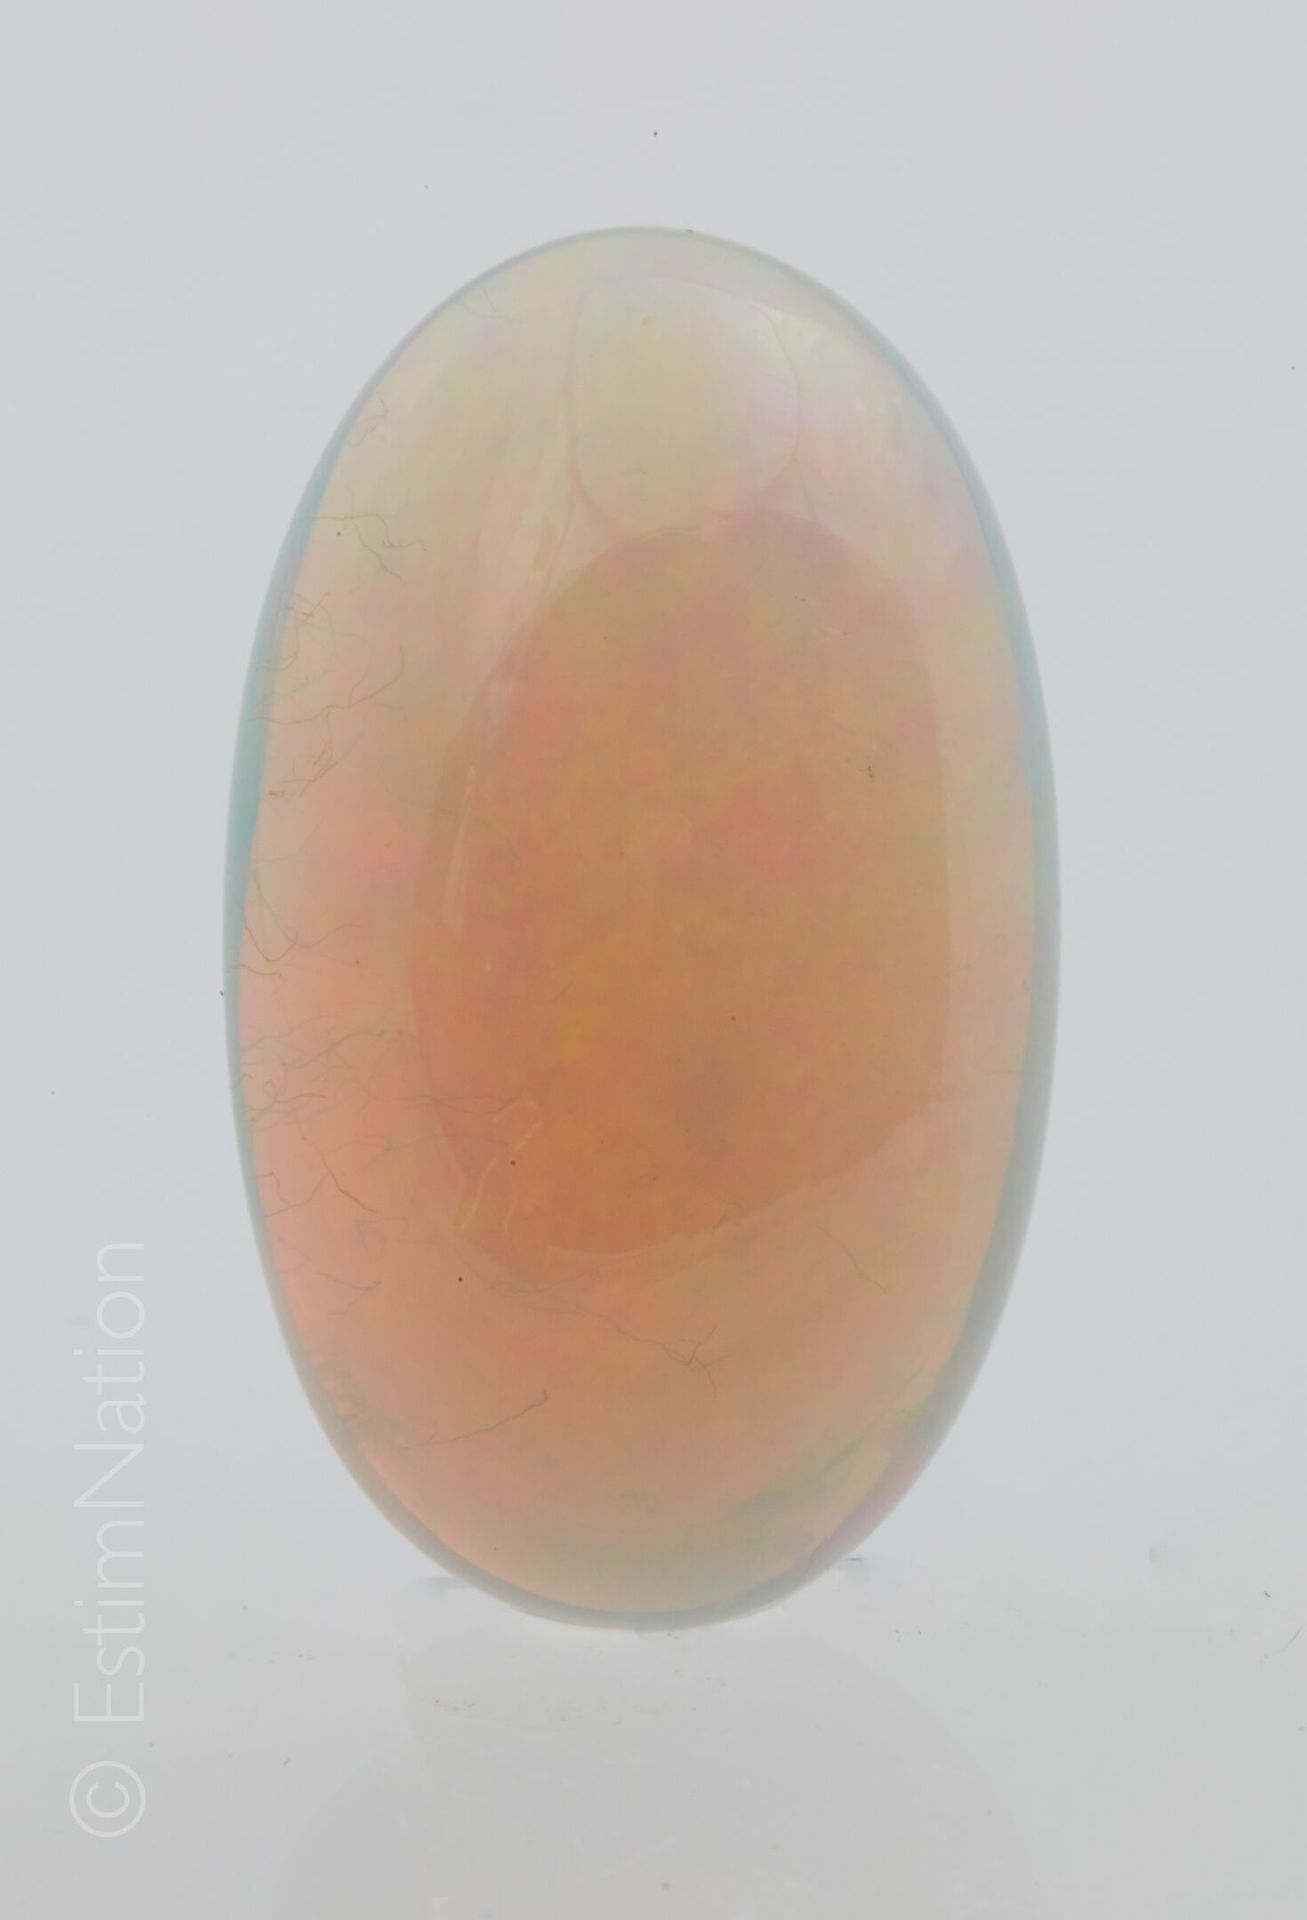 OPALE WELO 威罗蛋白石，椭圆形凸圆形。原产地：埃塞俄比亚

尺寸：17.40 x 10.40 x 6.70毫米左右